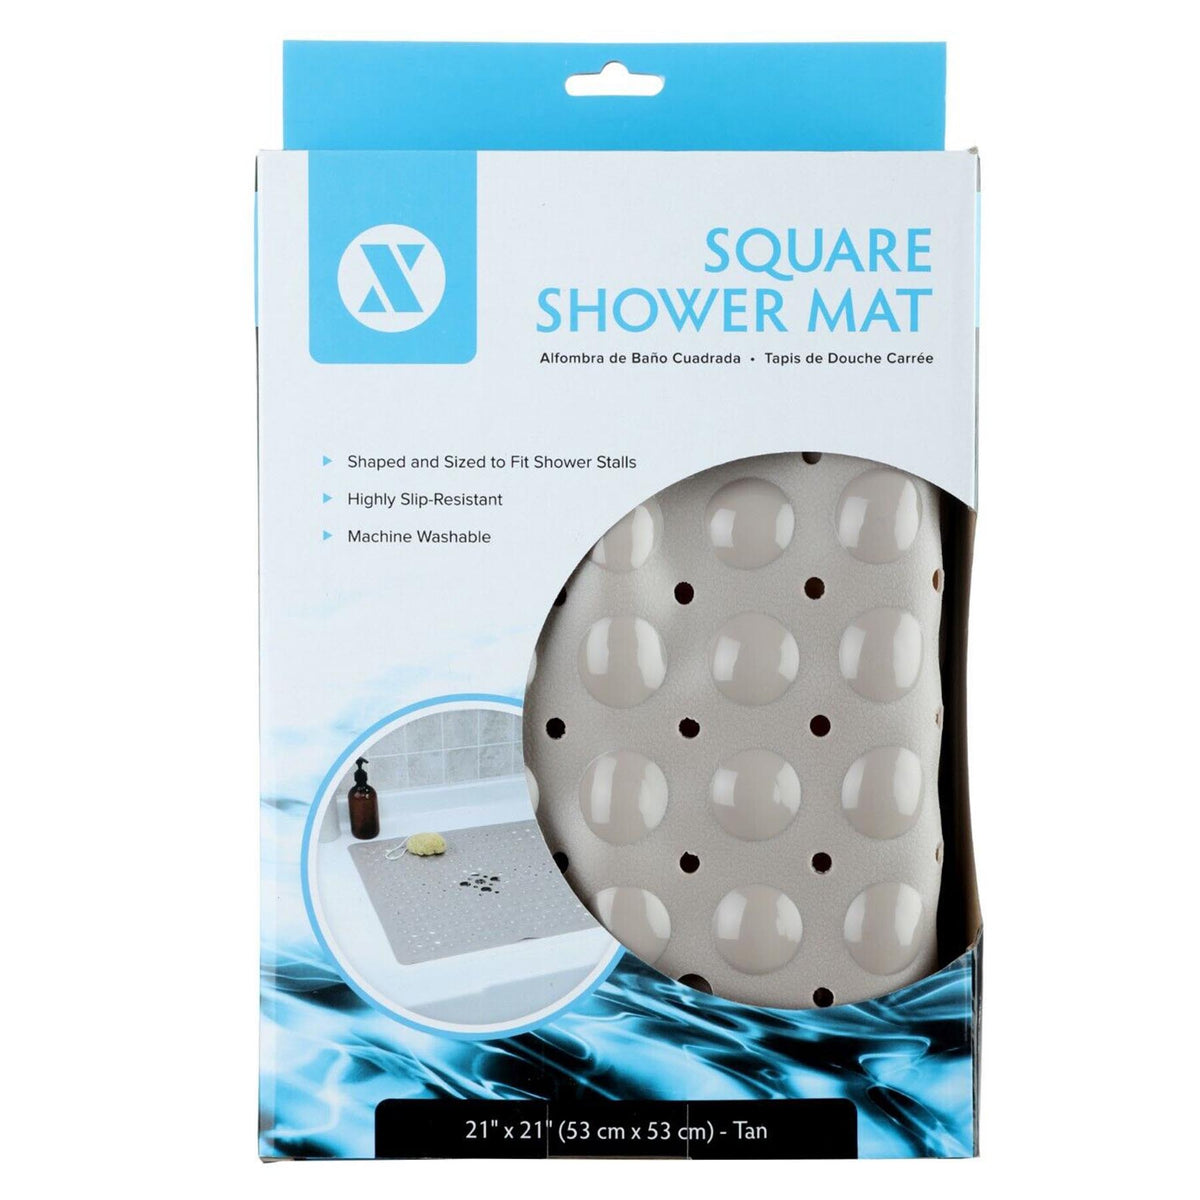 Square Shower Mat, Tan Color